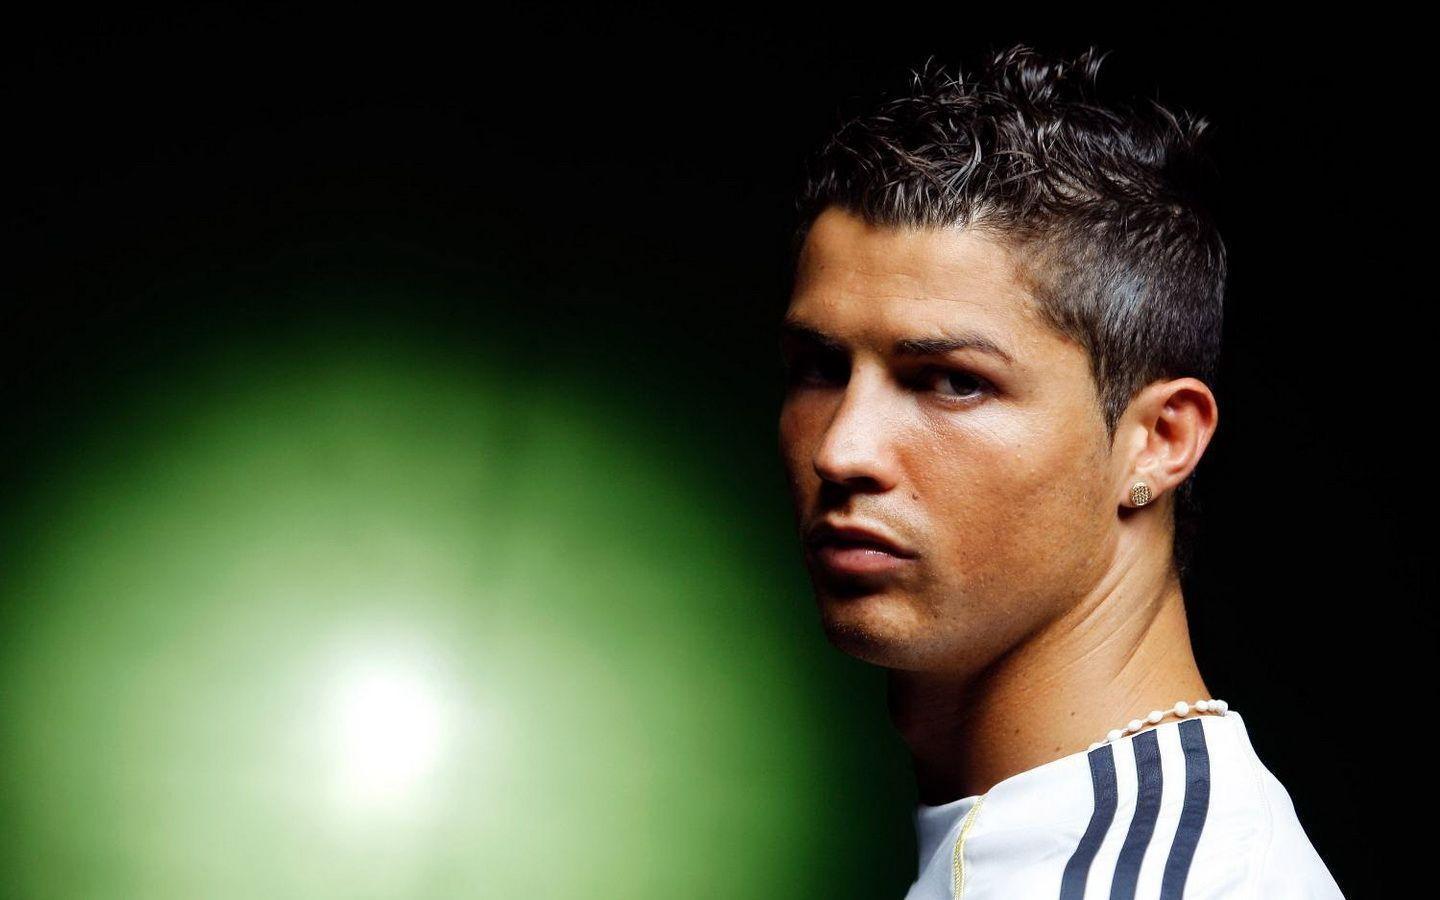 Cristiano Ronaldo Profil Wallpaper Image Wallpaper. High